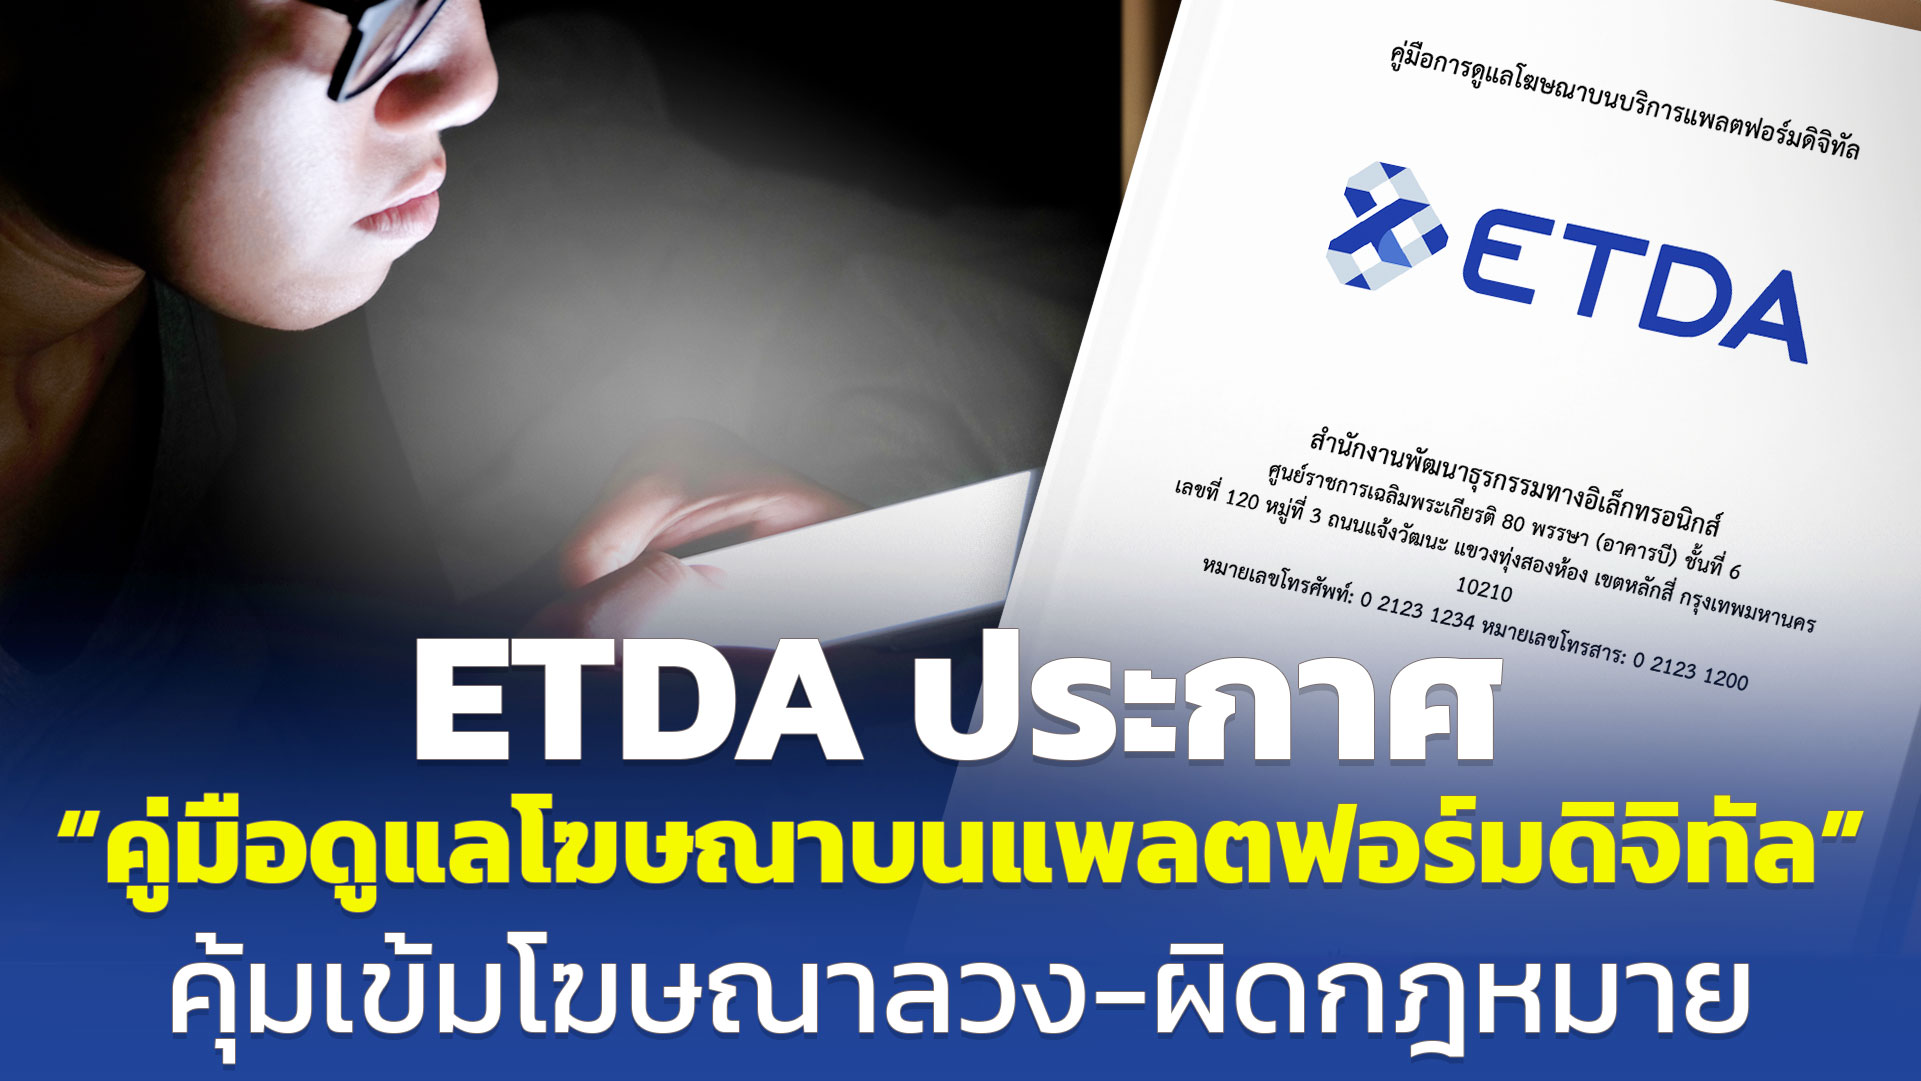 ETDA ประกาศ “คู่มือดูแลโฆษณาบนแพลตฟอร์มดิจิทัล” คุ้มเข้มโฆษณาลวง-ผิดกฎหมาย